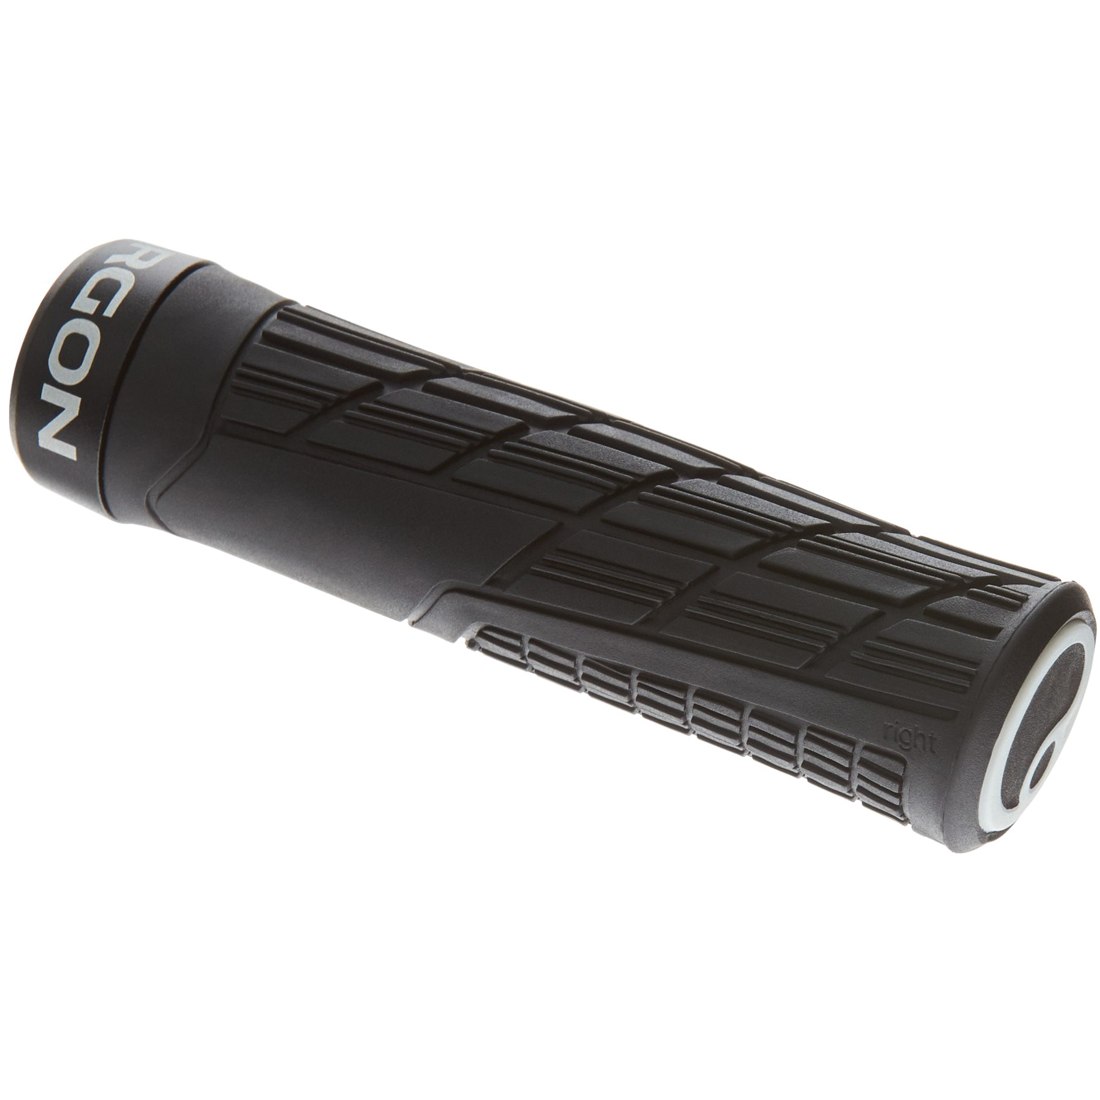 Productfoto van Ergon GE1 Evo Regular Bar Grips - black